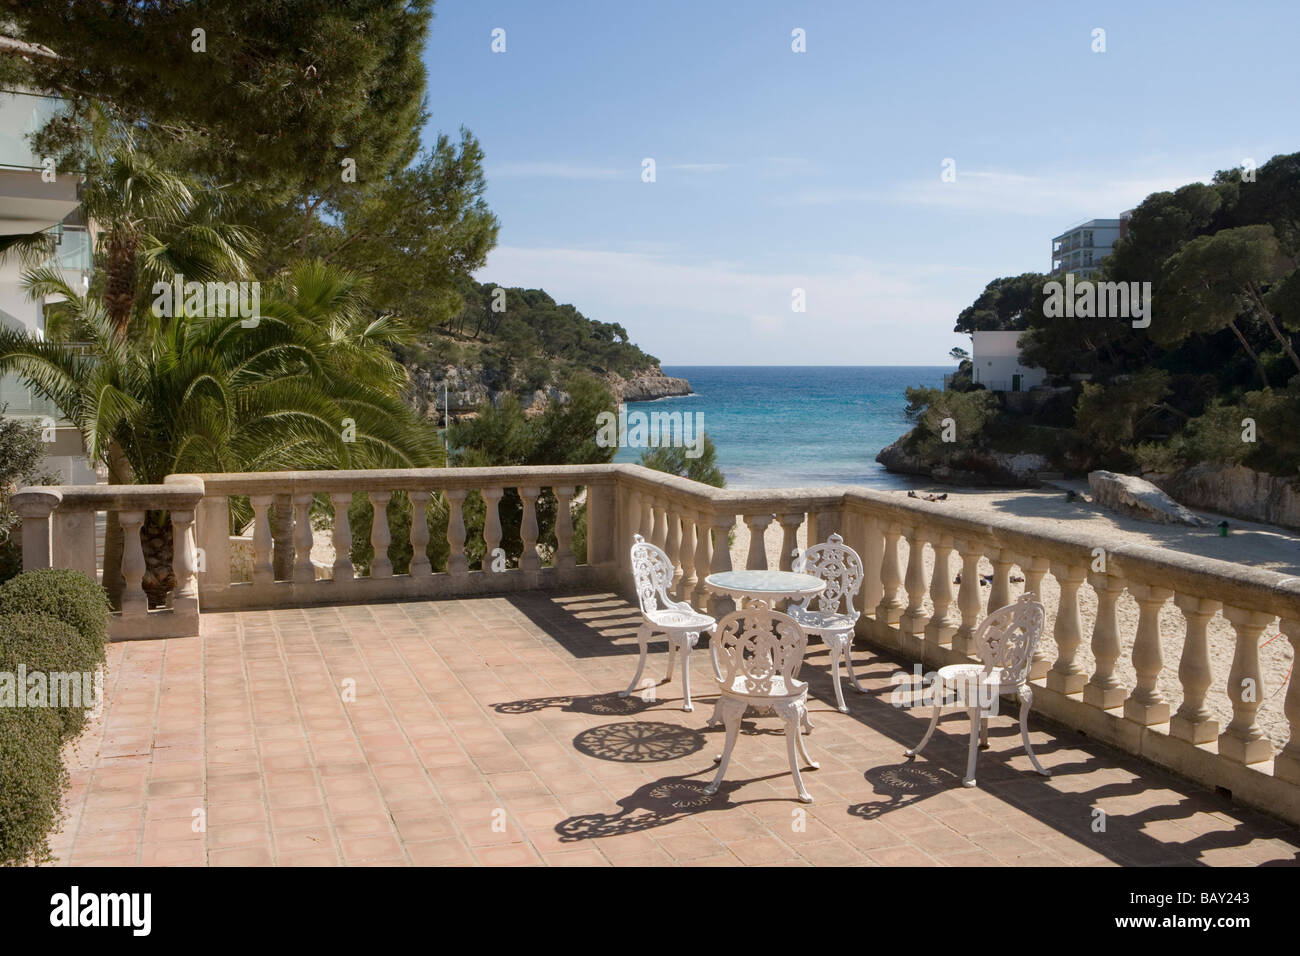 La terrazza che si affaccia su Cala Santanyi Cove, Cala Santanyi, Maiorca, isole Baleari, Spagna Foto Stock